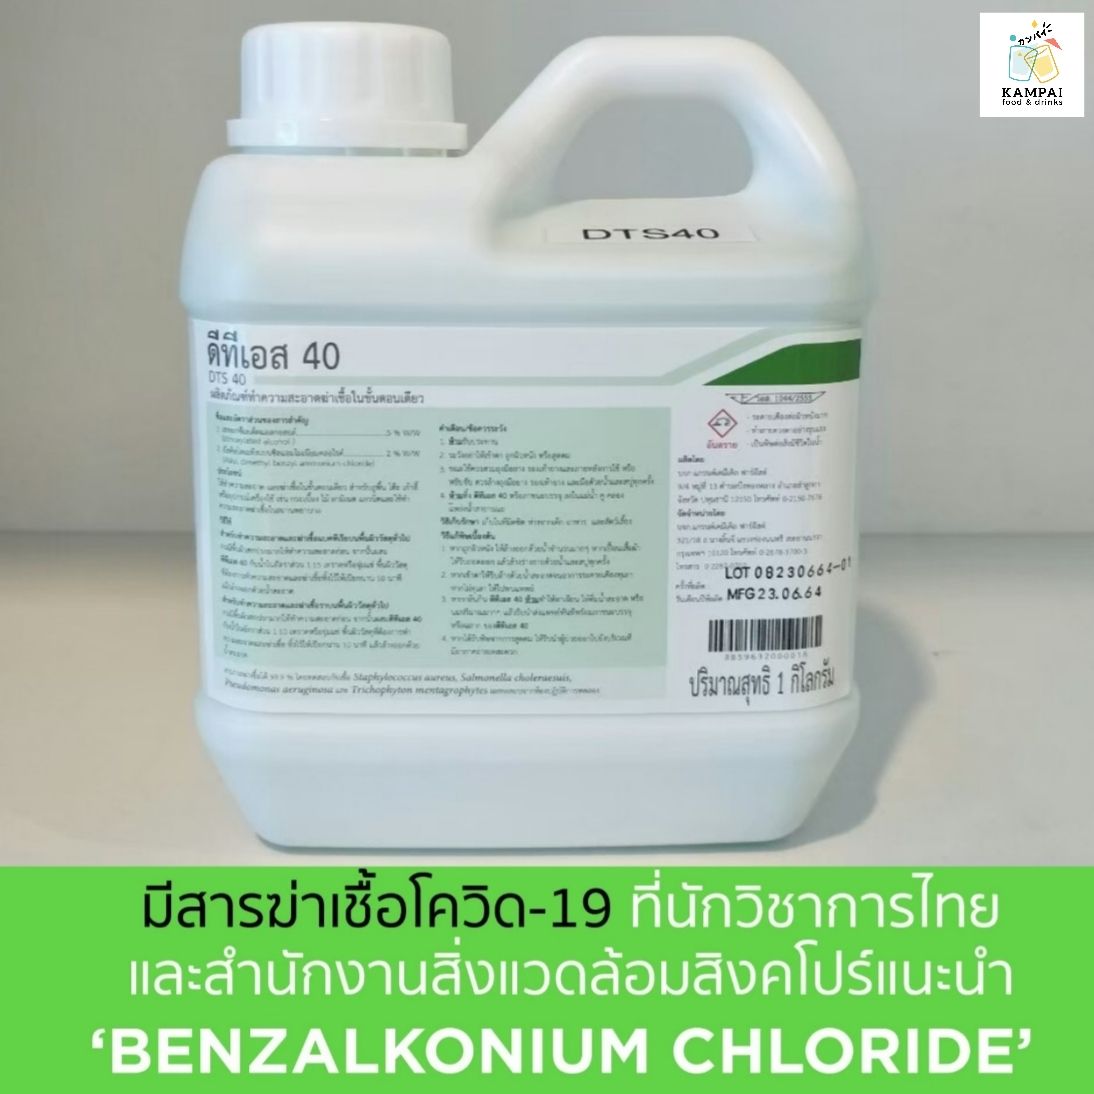 น้ำยาทำความสะอาด และฆ่าเชื้อในขั้นตอนเดียว 1 ลิตร ผสมน้ำได้ 40 ลิตร (มีอย.) ดีทีเอส 40 DTS40 BKC Benzalkonium Chloride benzion น้ำยาฆ่าเชื้อ by Kampai , KampaiFoodDrinks